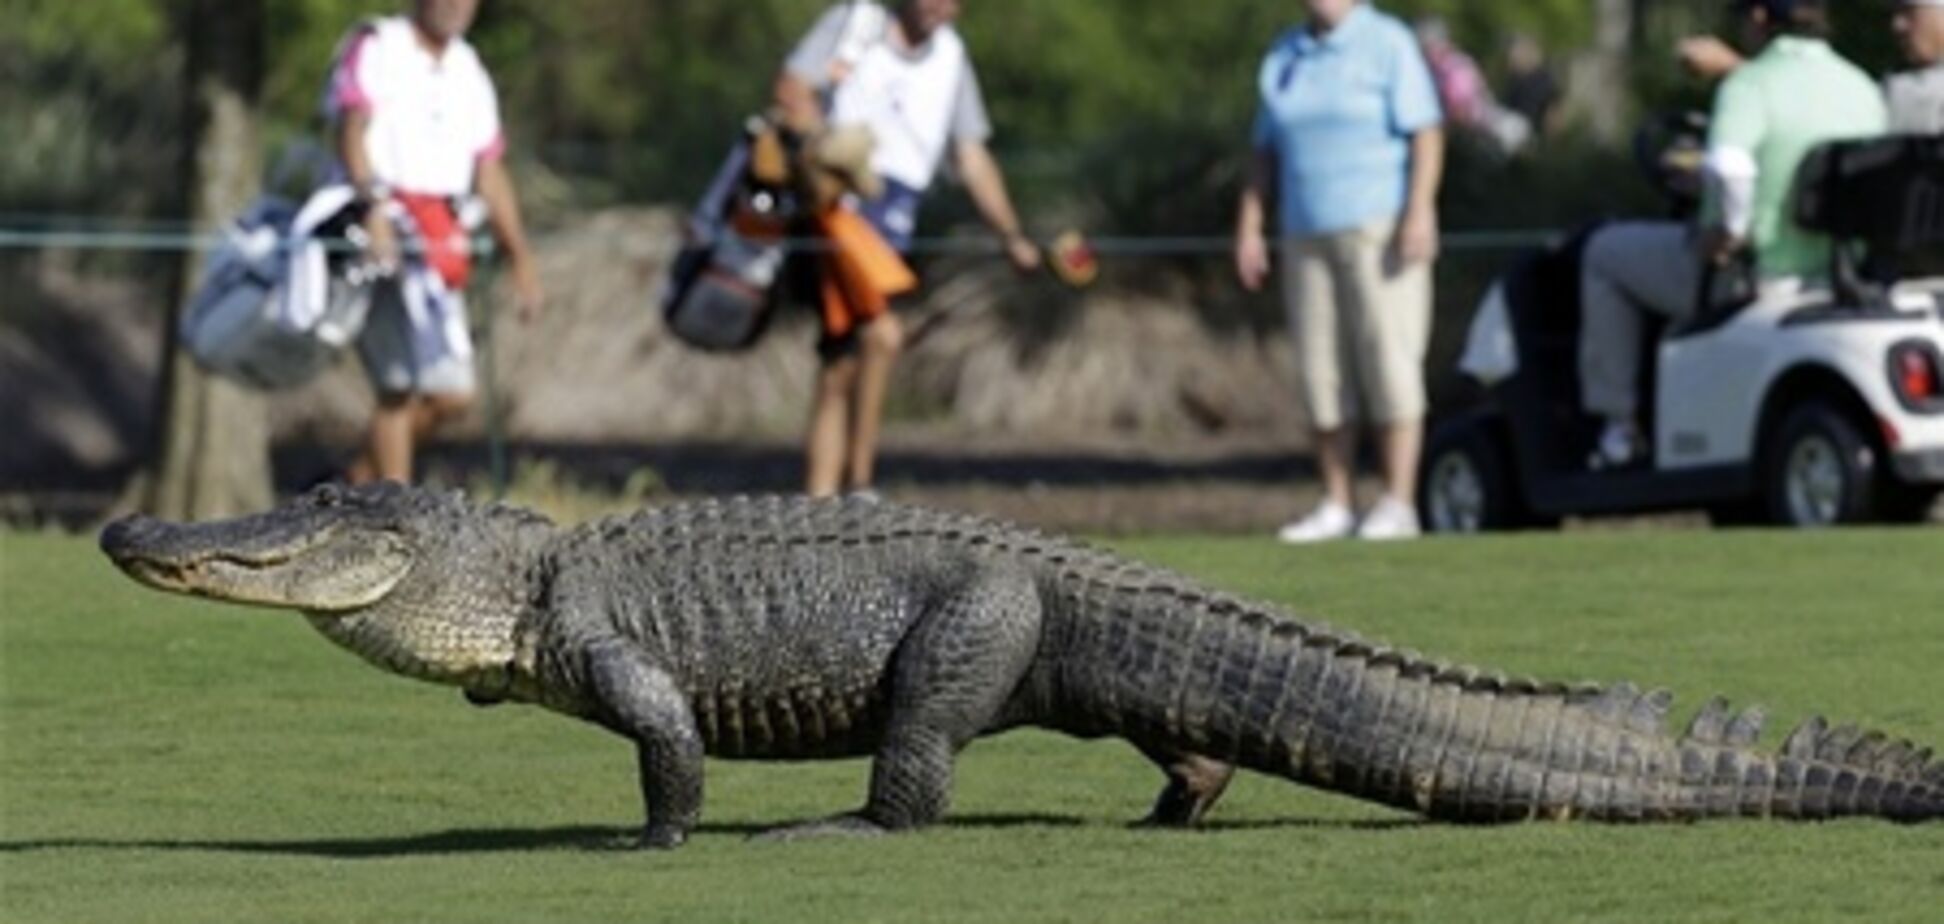 Турист хотел поиграть в гольф с крокодилом и остался без пальцев